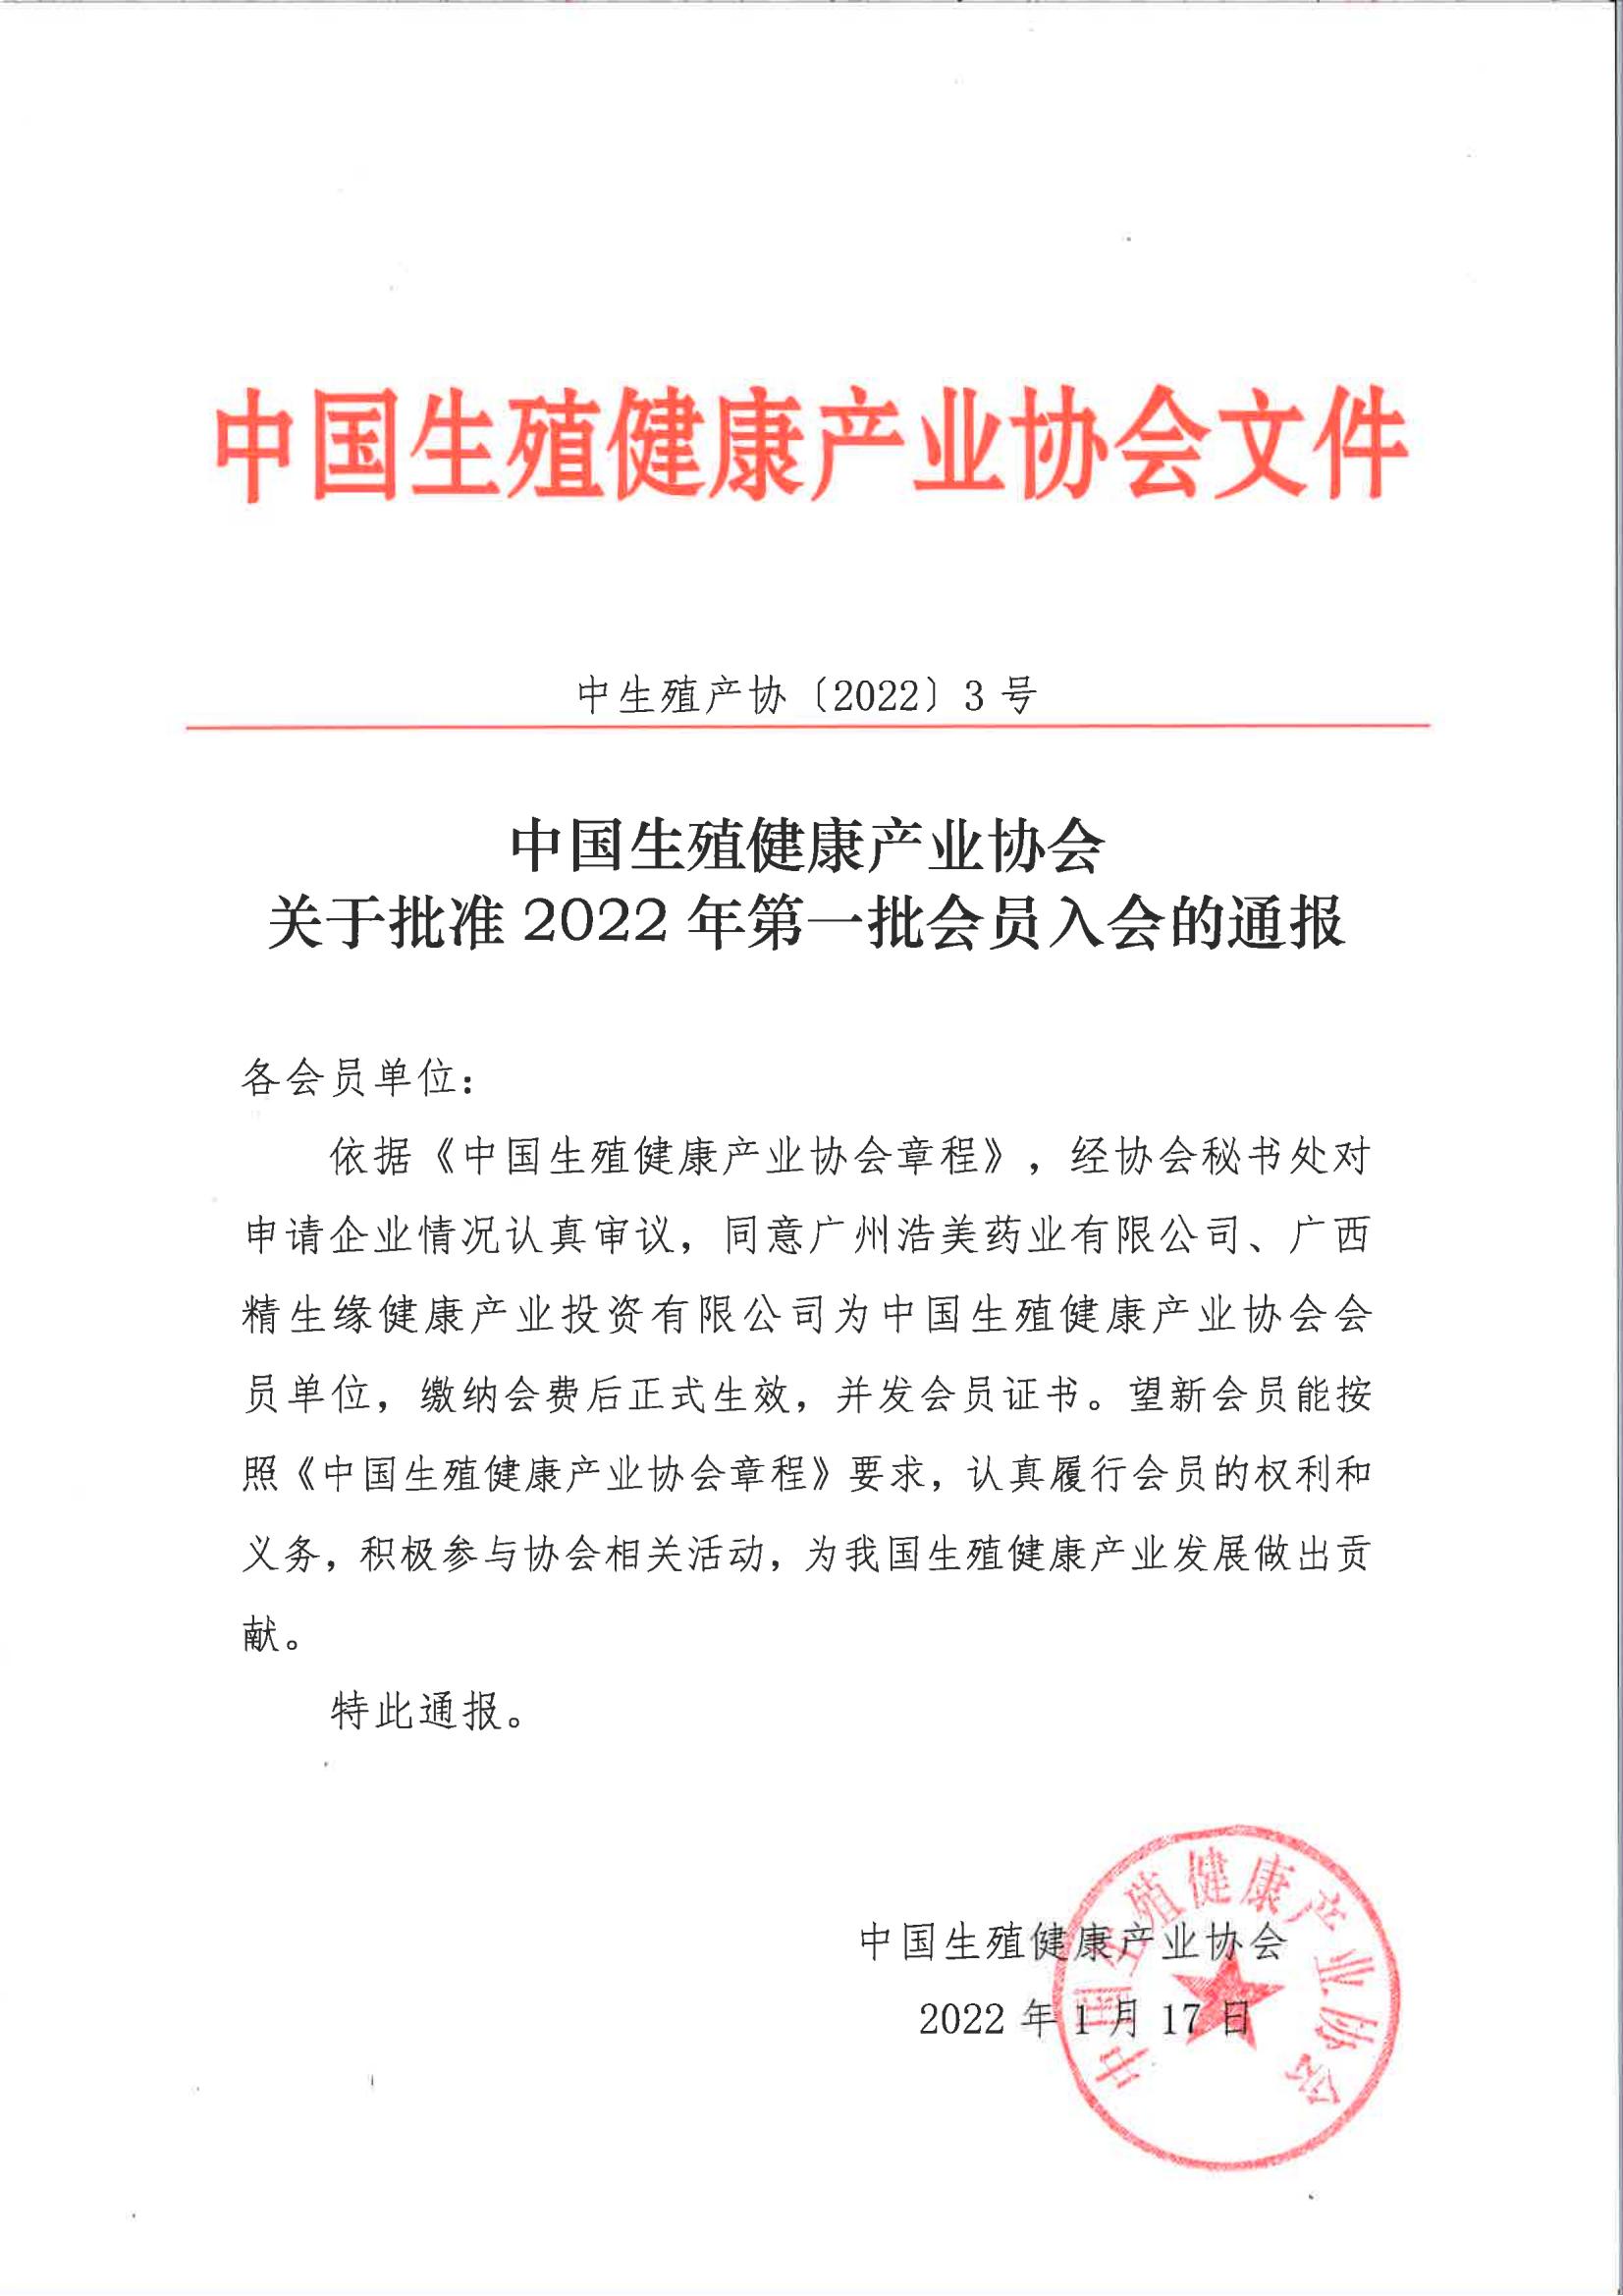 中国生殖健康产业协会关于批准2022年第一批会员单位的通报